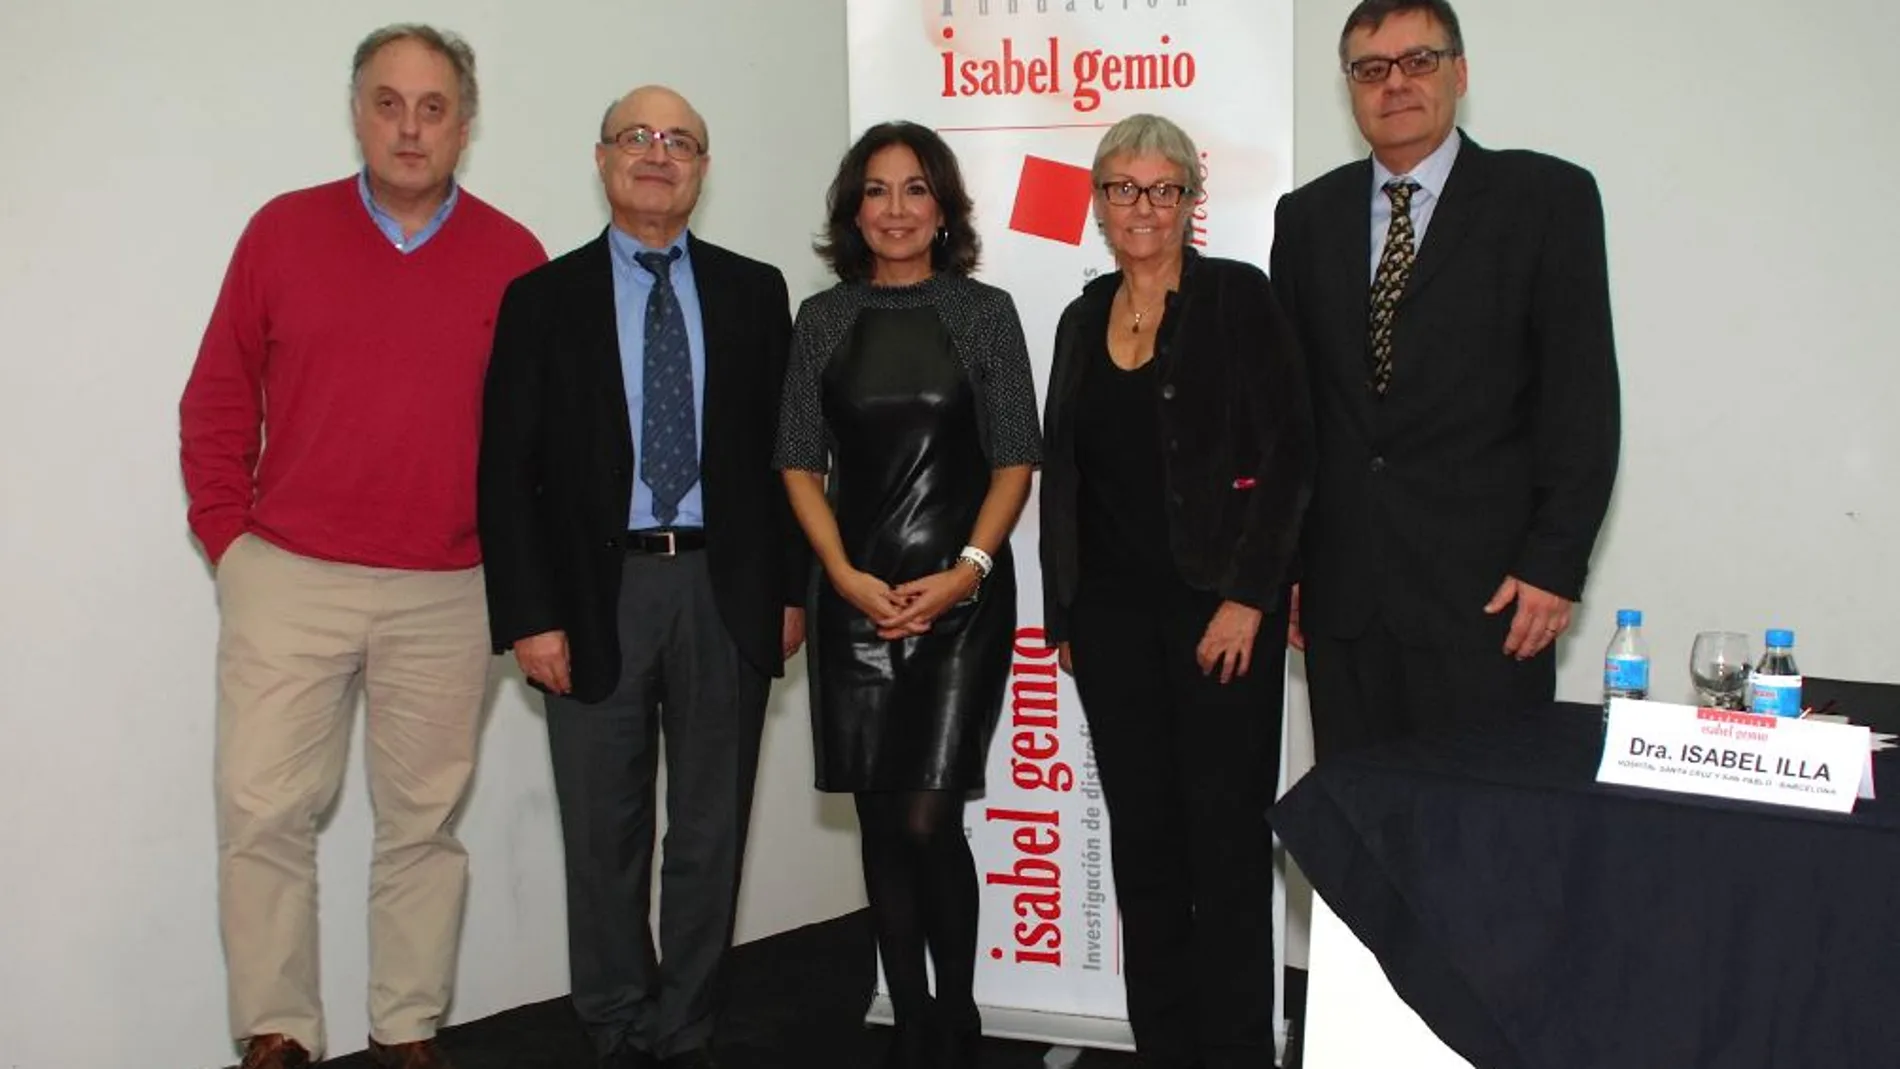 La Fundación Isabel Gemio, presenta en el Día Mundial de las Enfermedades Raras, un positivo balance